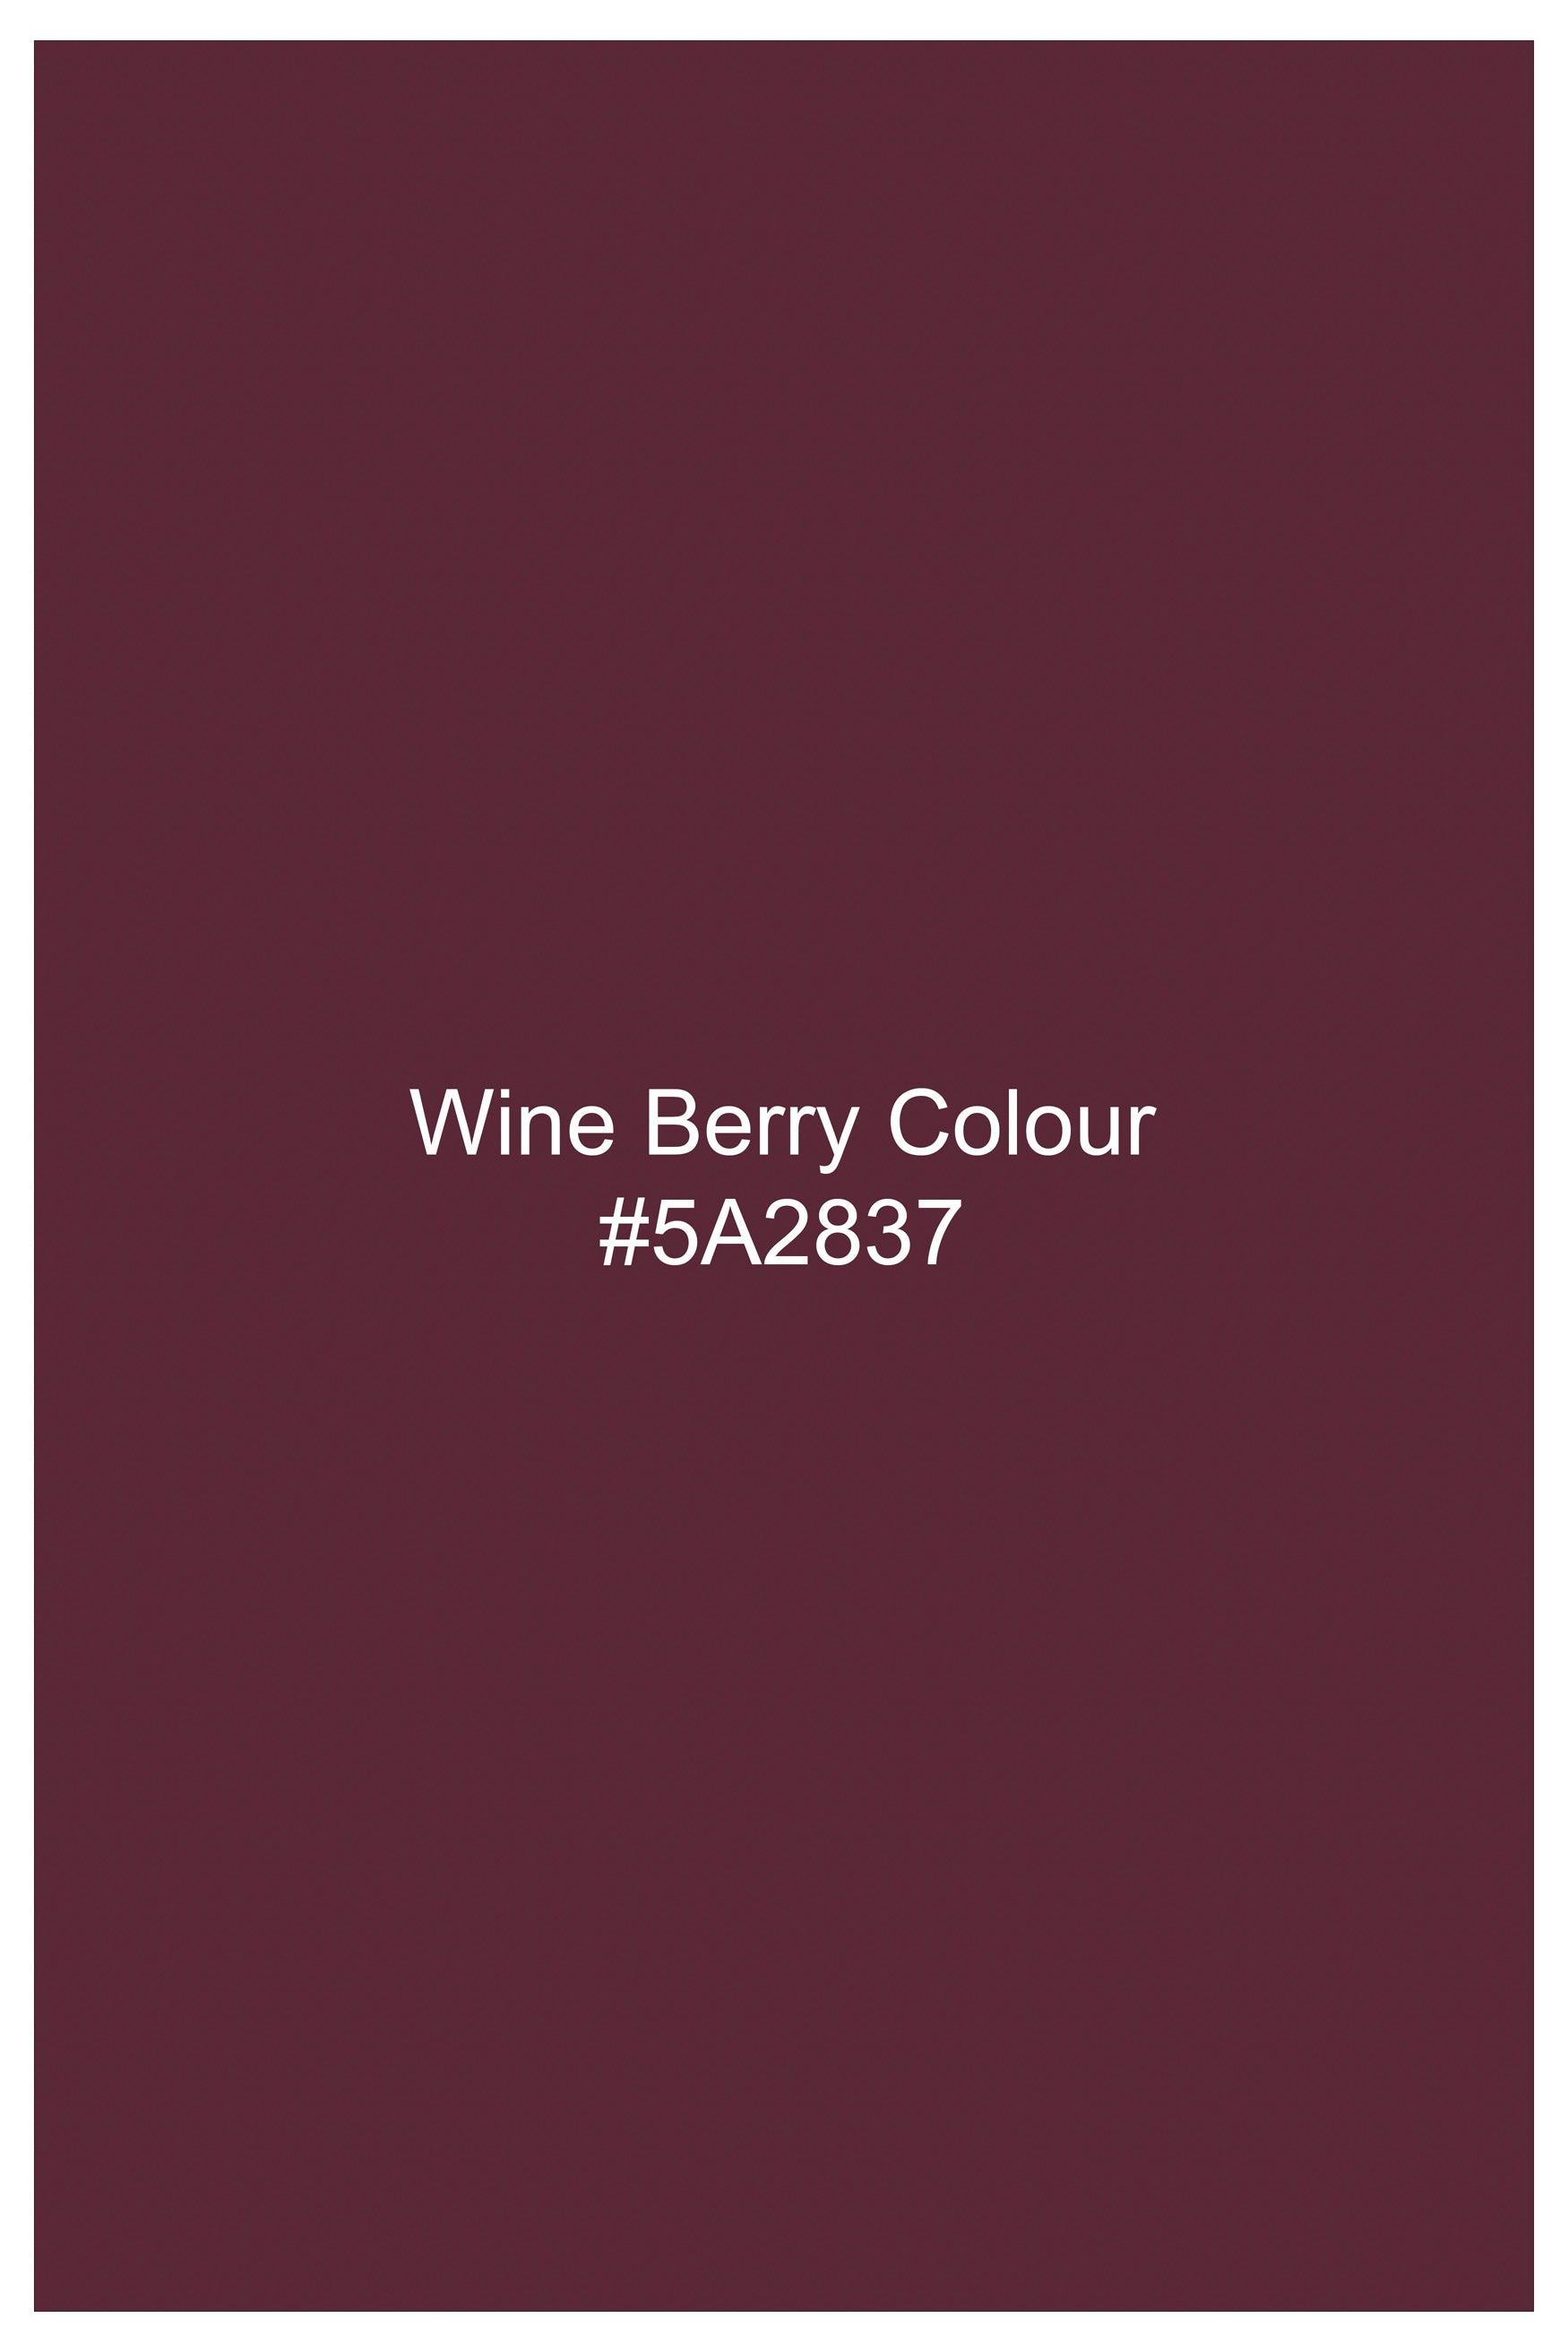 Wine Berry Red Heavyweight Herringbone Striped Premium Cotton Designer Overshirt/shacket